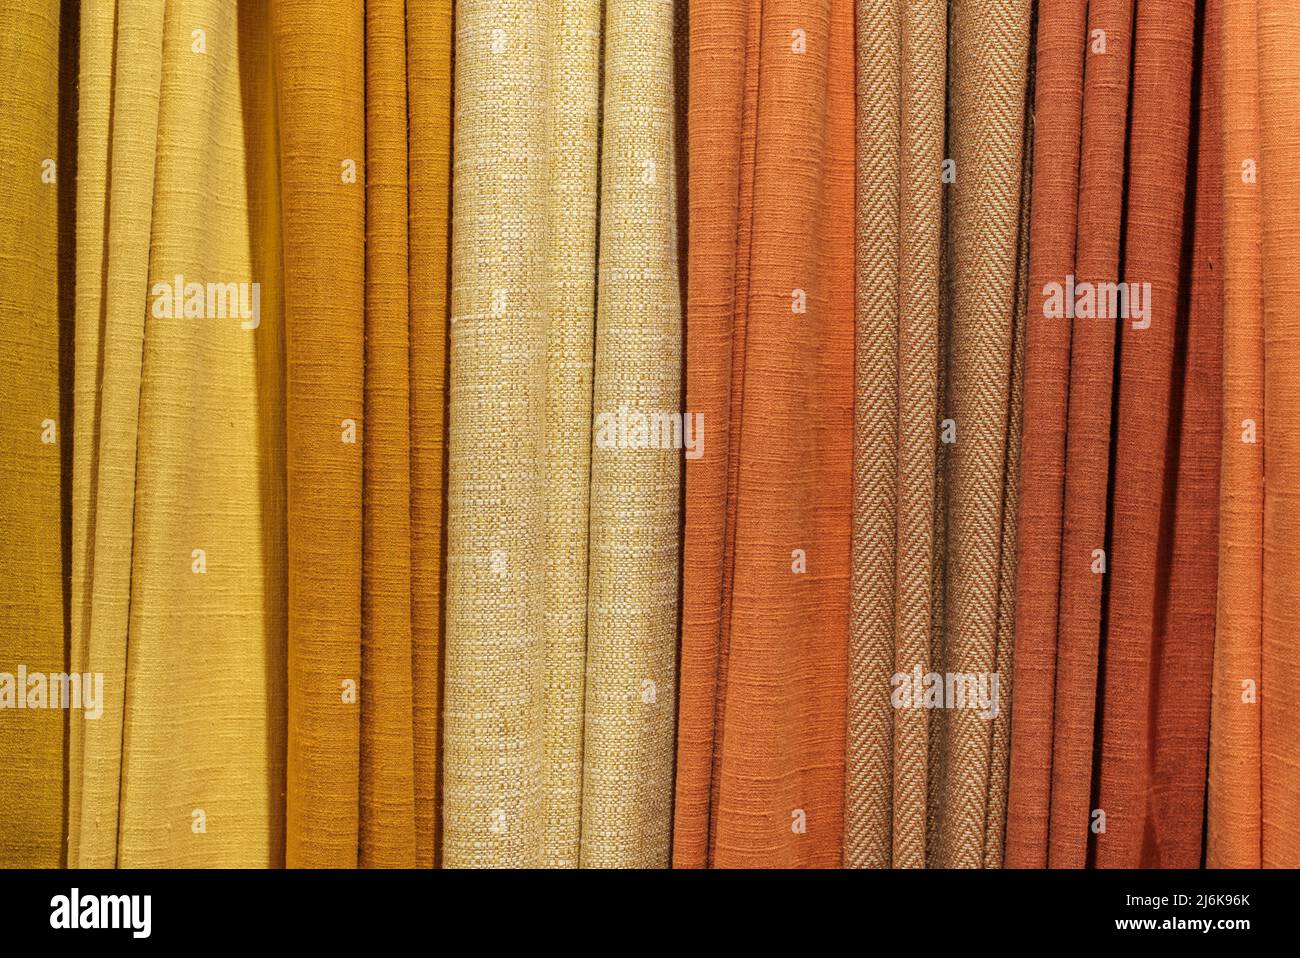 Textura de fondo de una selección de varias muestras de telas de colores cálidos diferentes Foto de stock